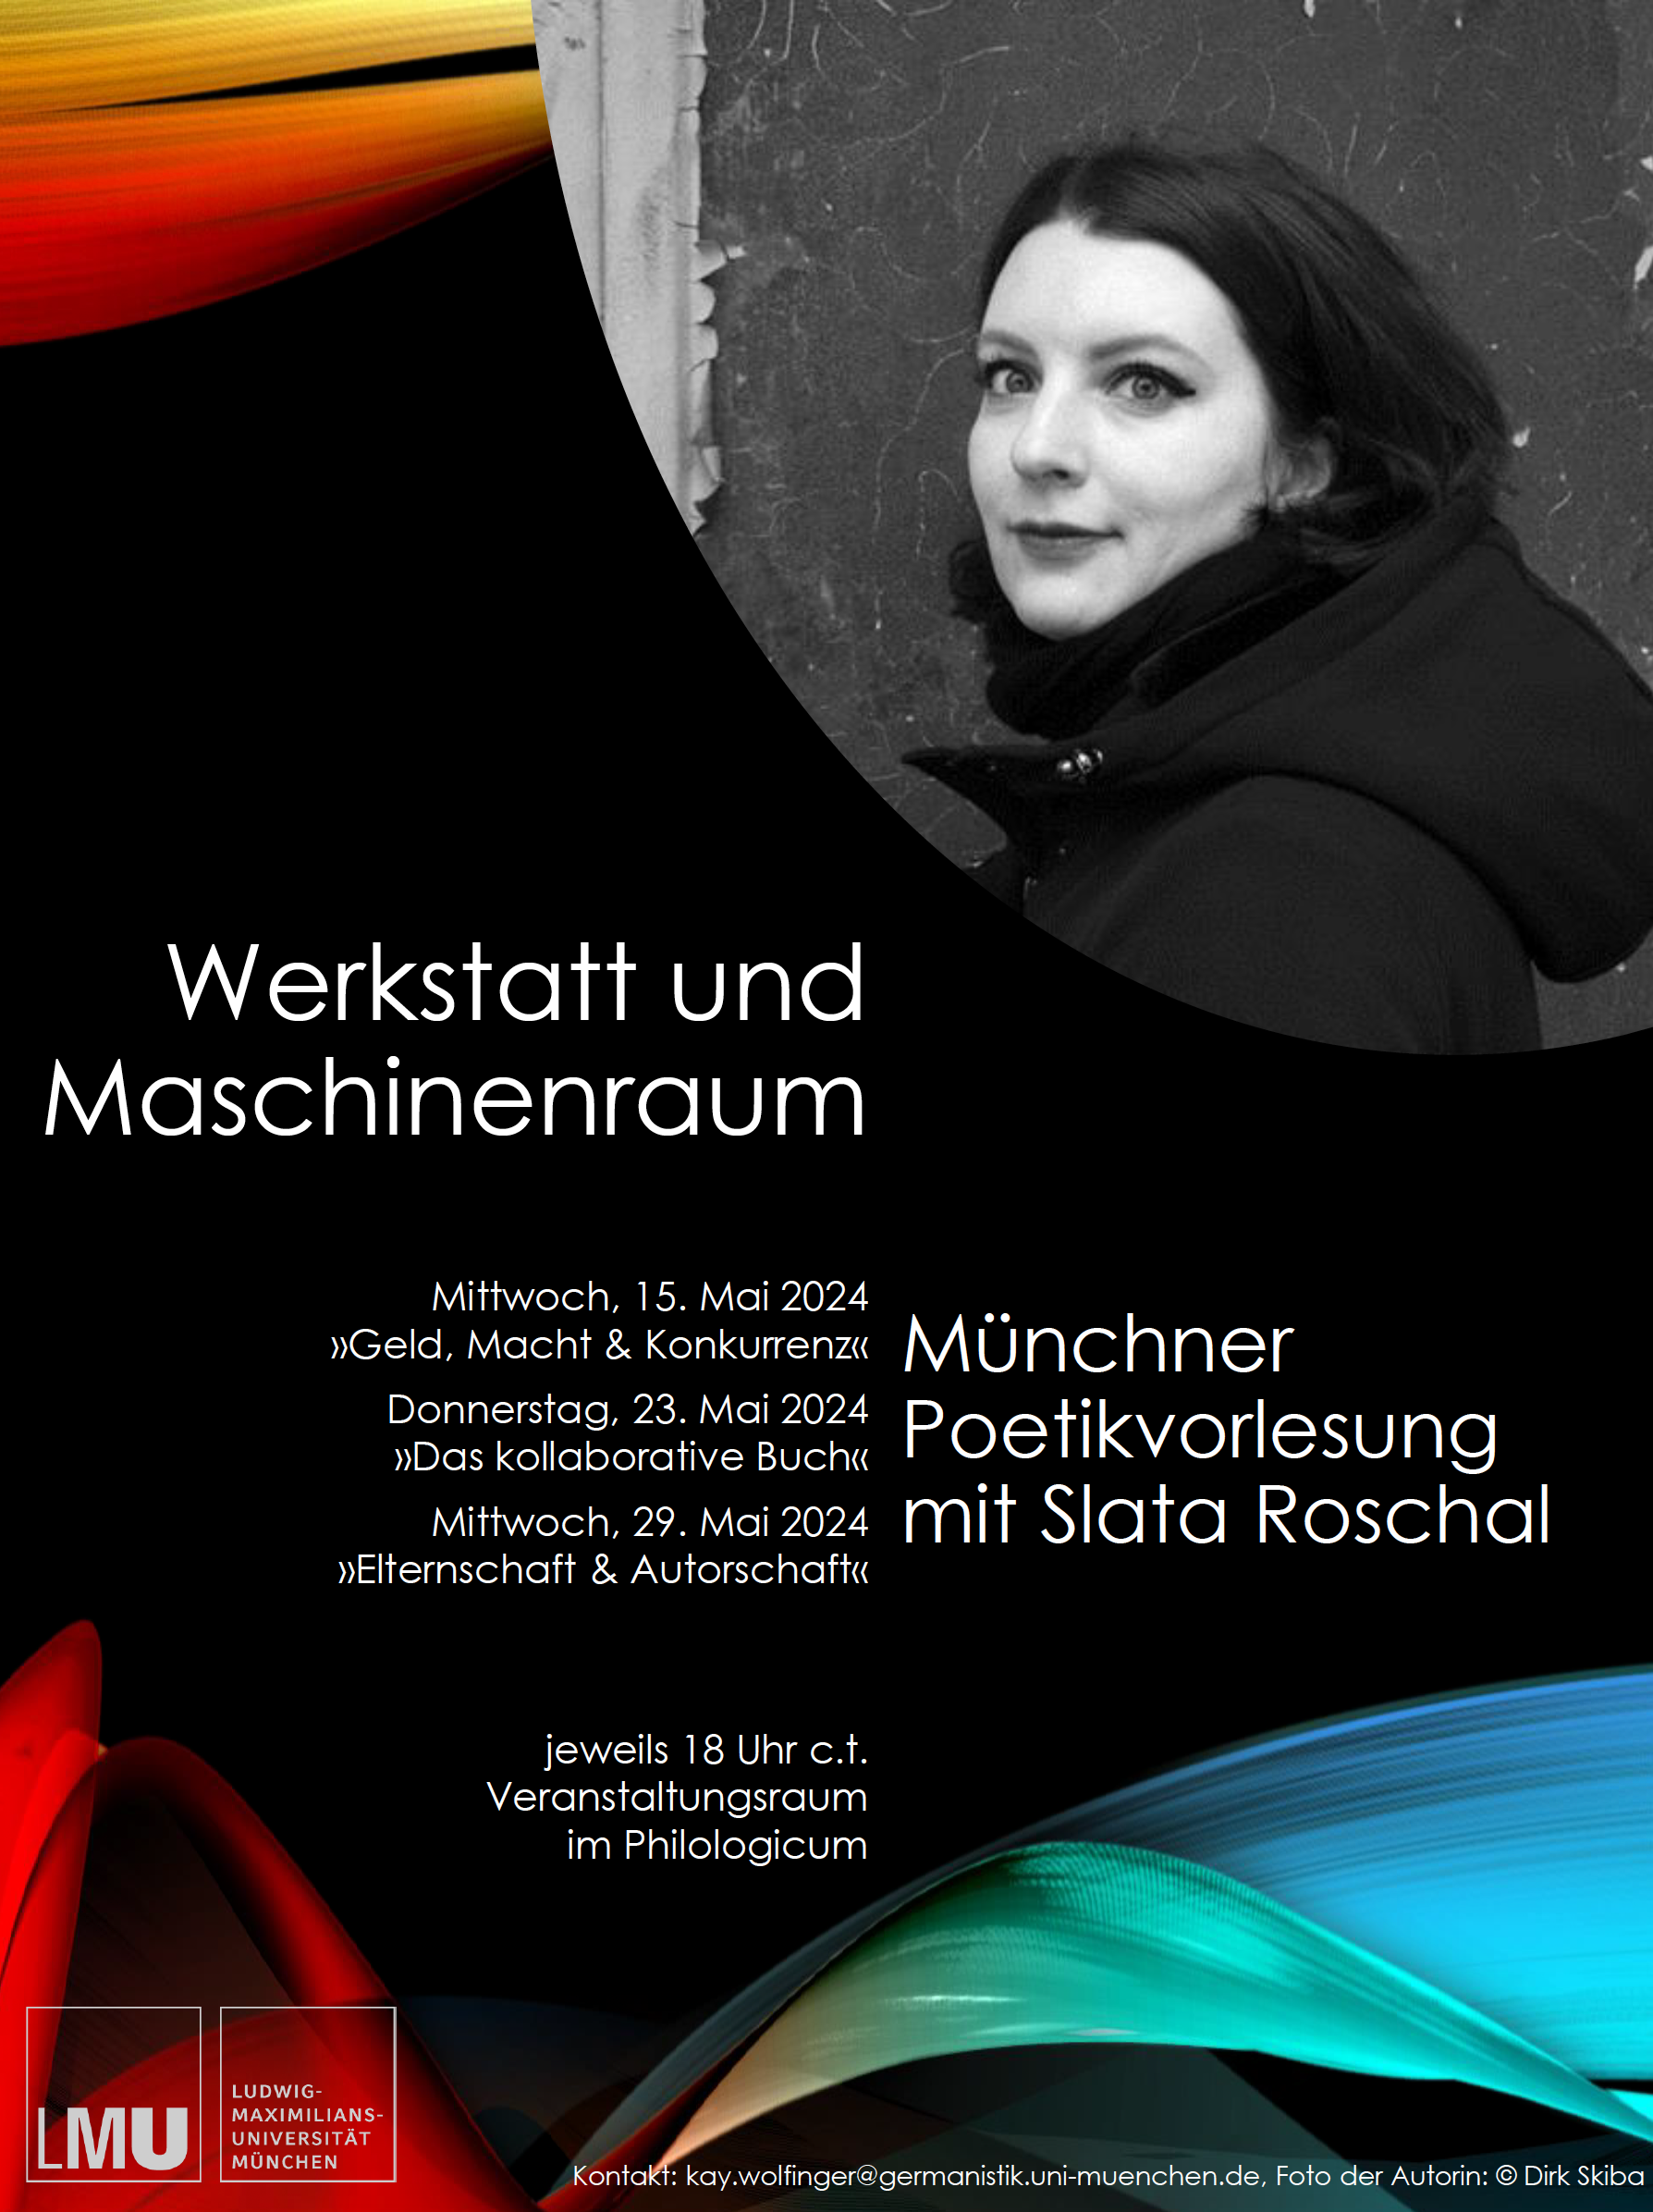 Poetikvorlesung "Werkstatt und Maschinenraum" mit Slata Roschal 